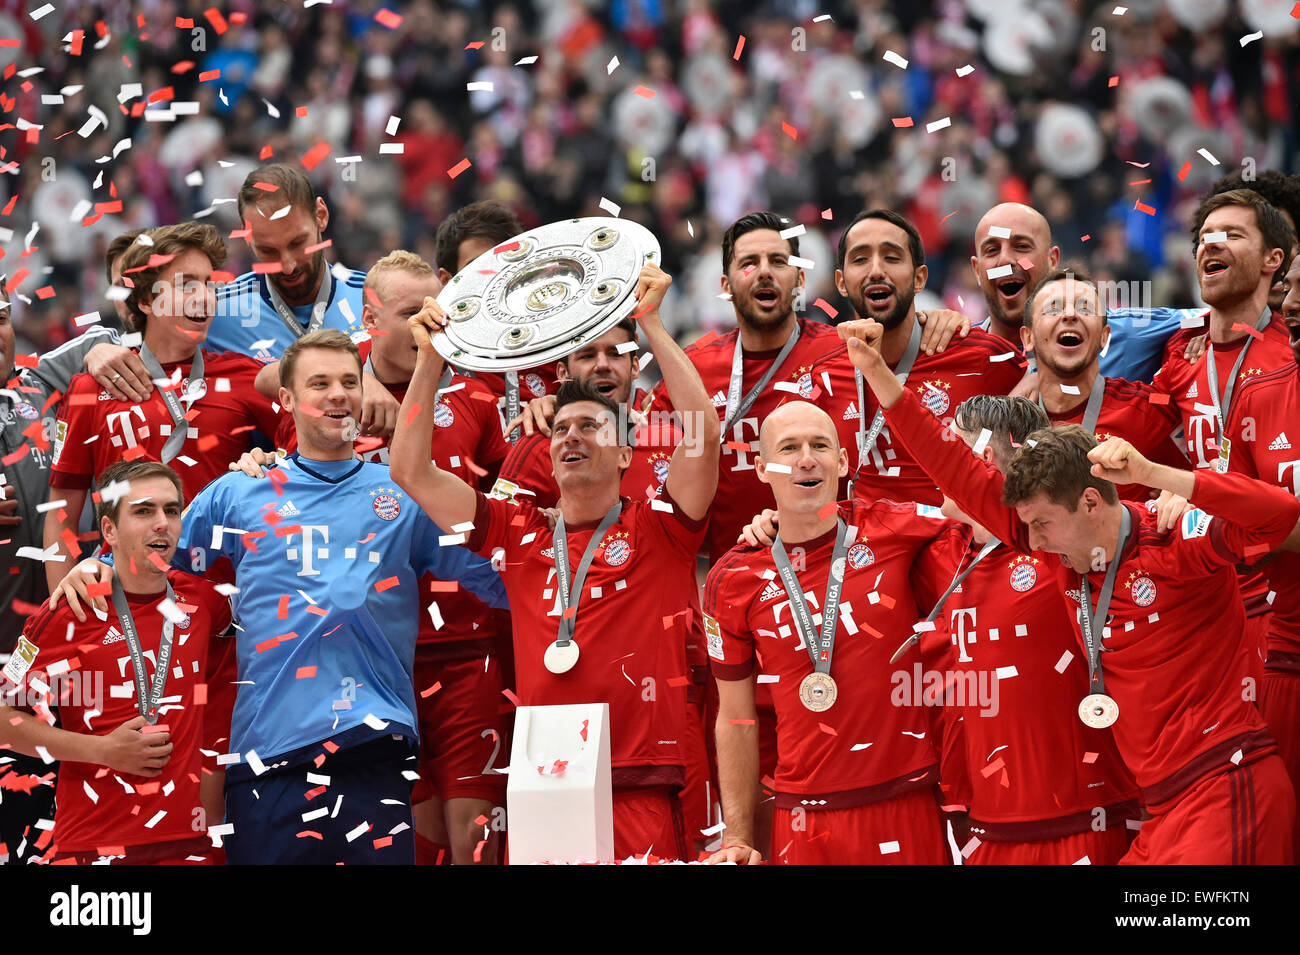 Robert Lewandowski holding trophy championnat championnat, célébration du FC Bayern, 25e championnat allemand de football Banque D'Images